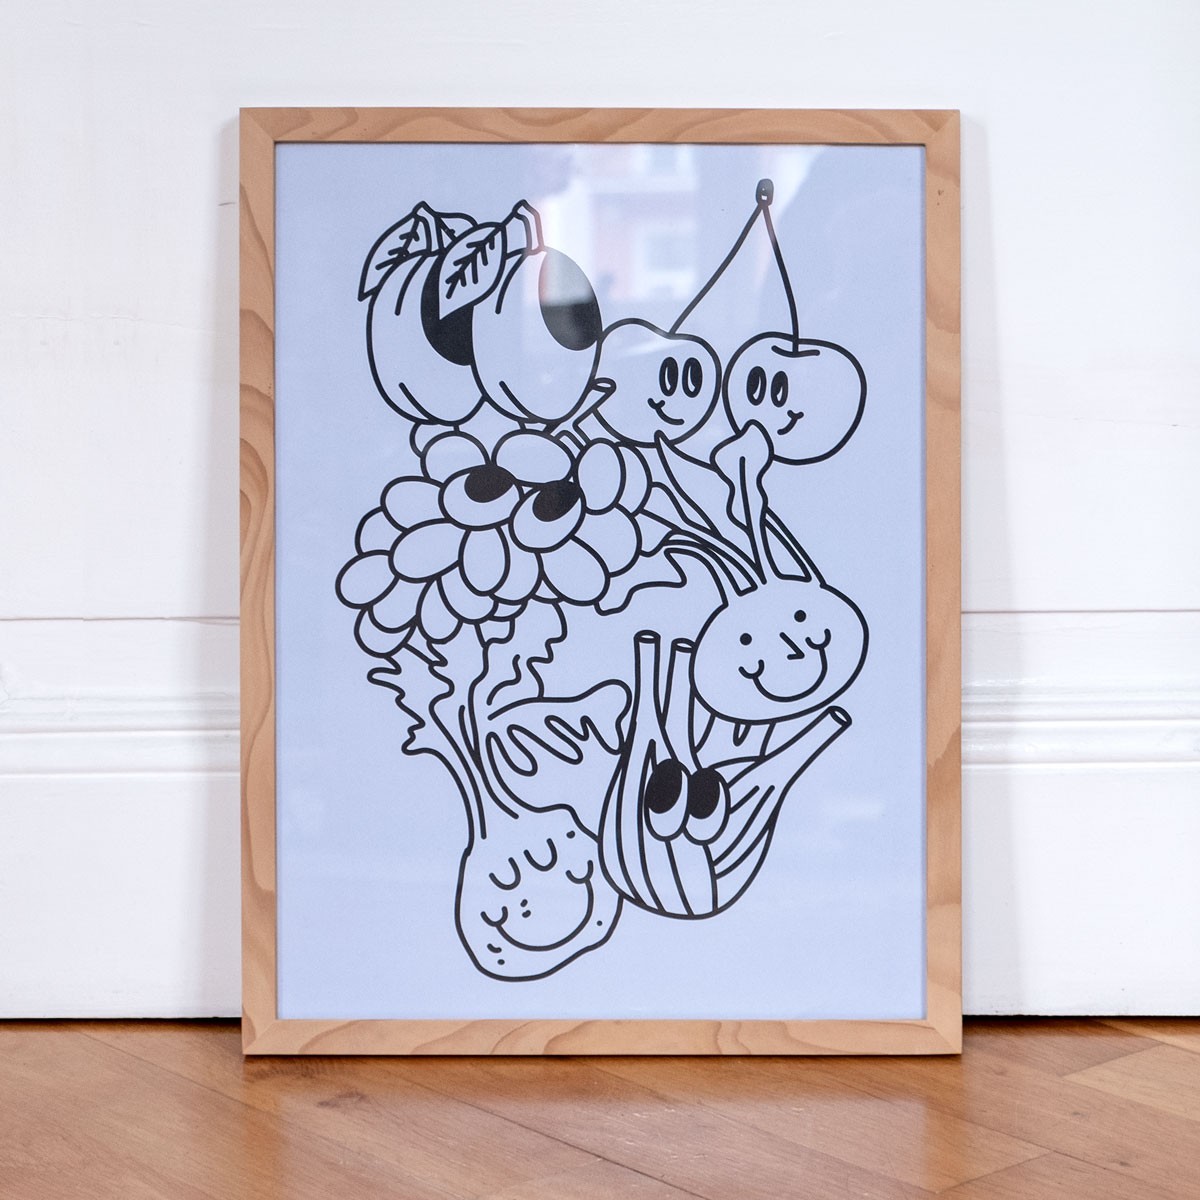 Apfel & Zwiebel – Happy Vegetables Poster (30 x 40 cm)